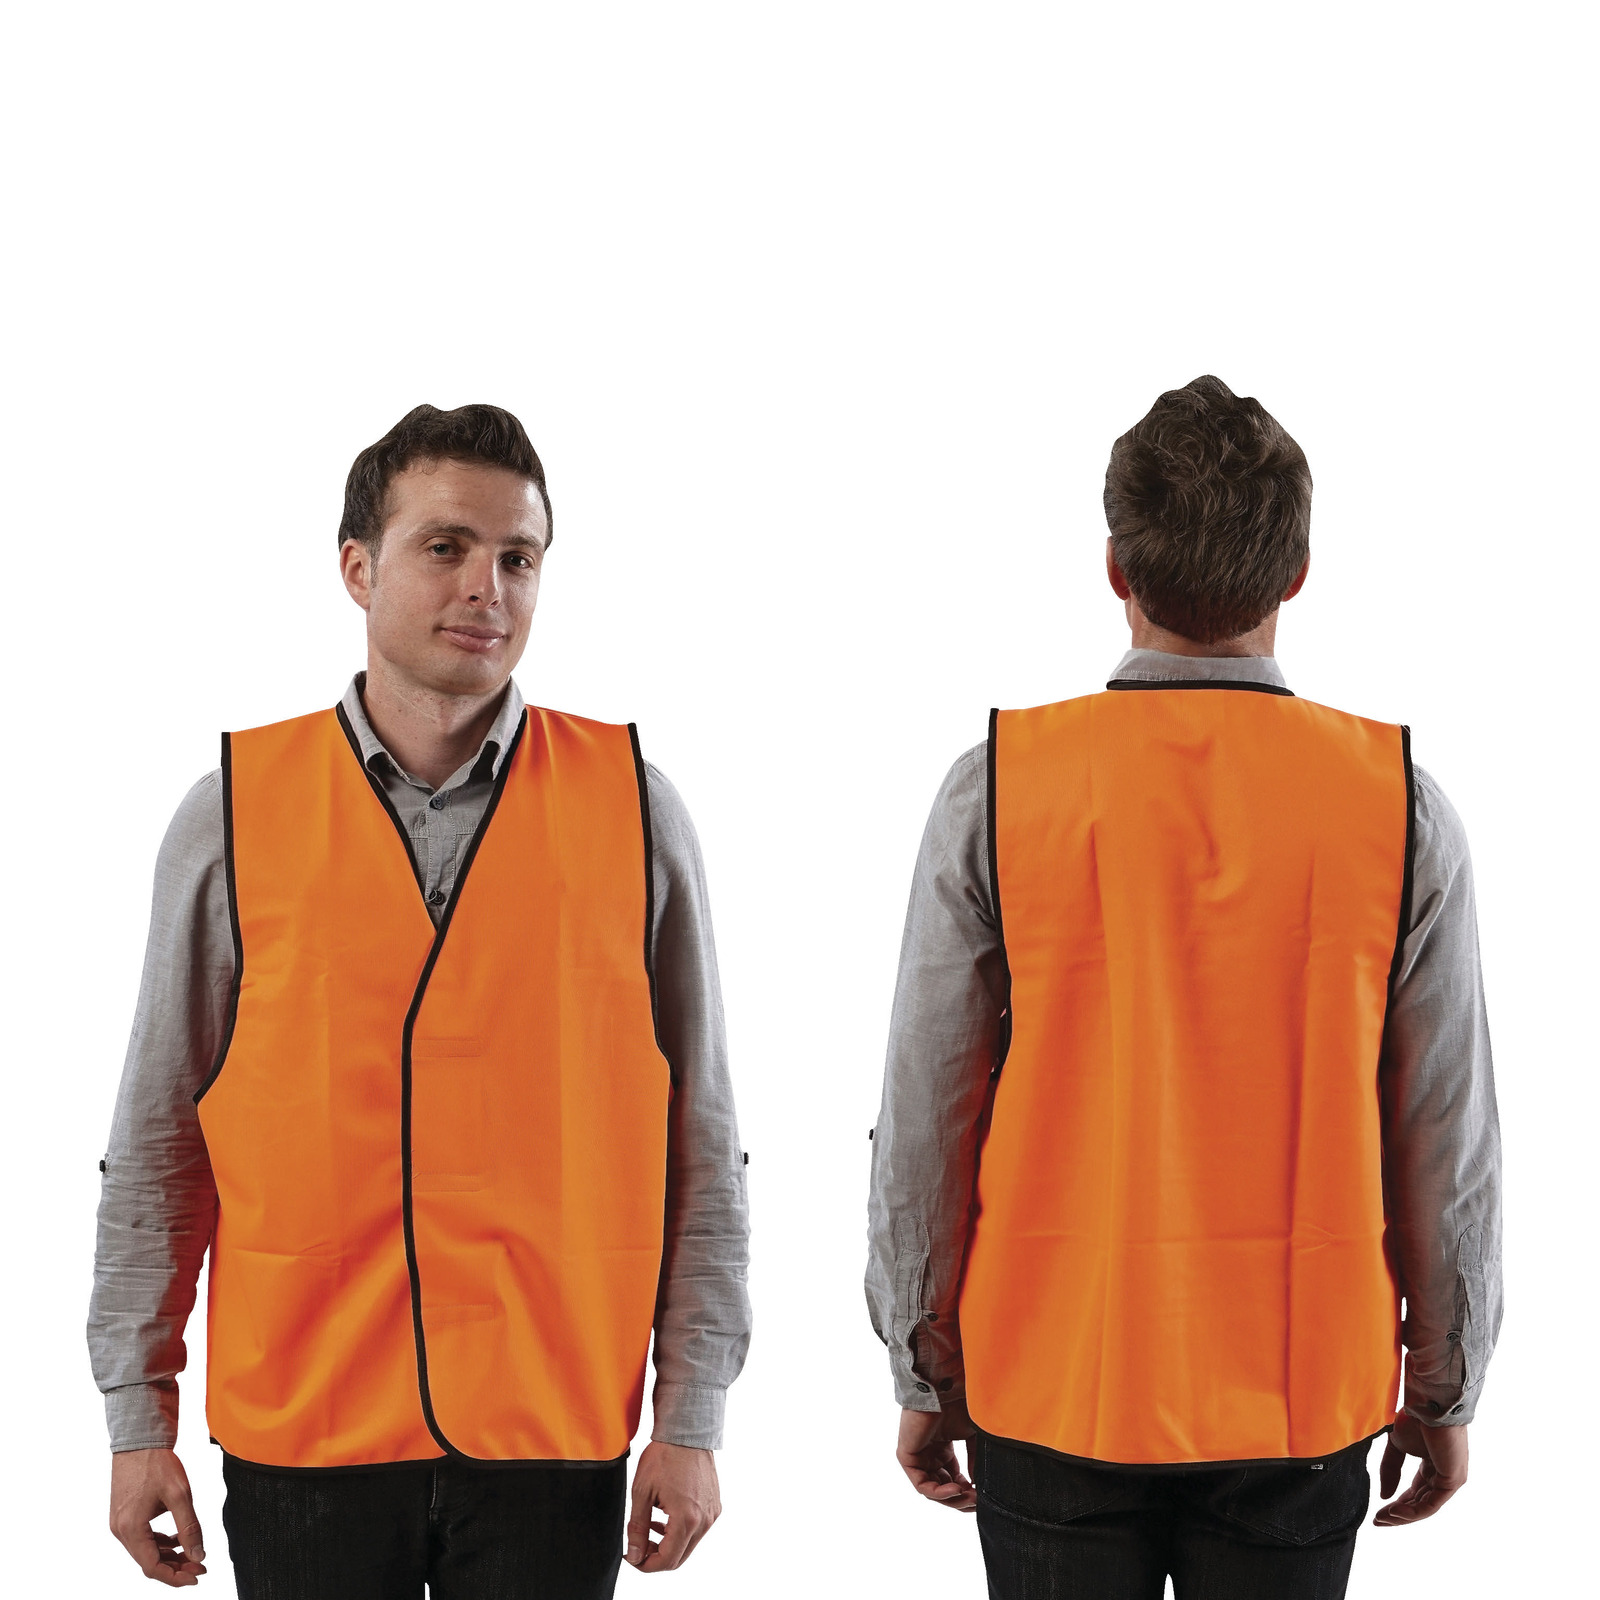 Safety Vest - Extra Large